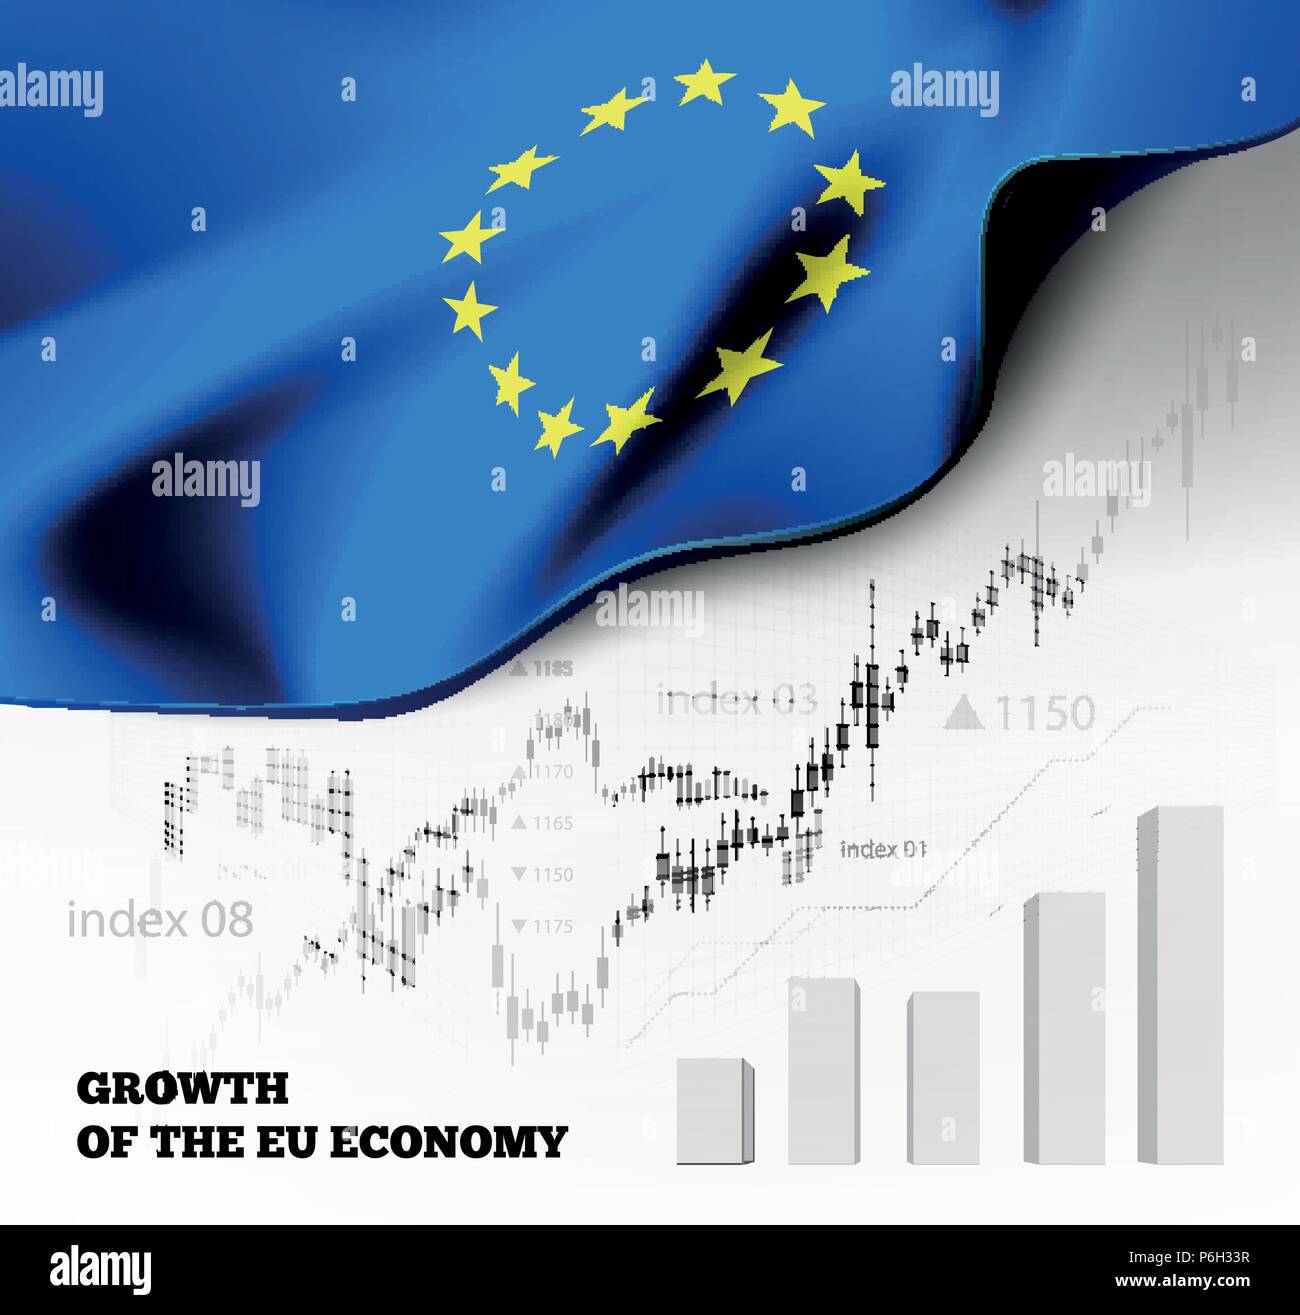 L'économie de l'UE L'illustration avec le drapeau de l'Union européenne et d'affaires, d'un diagramme graphique numéro de stock marché haussier, tendance à la ligne graphique symbolise la croissance Illustration de Vecteur